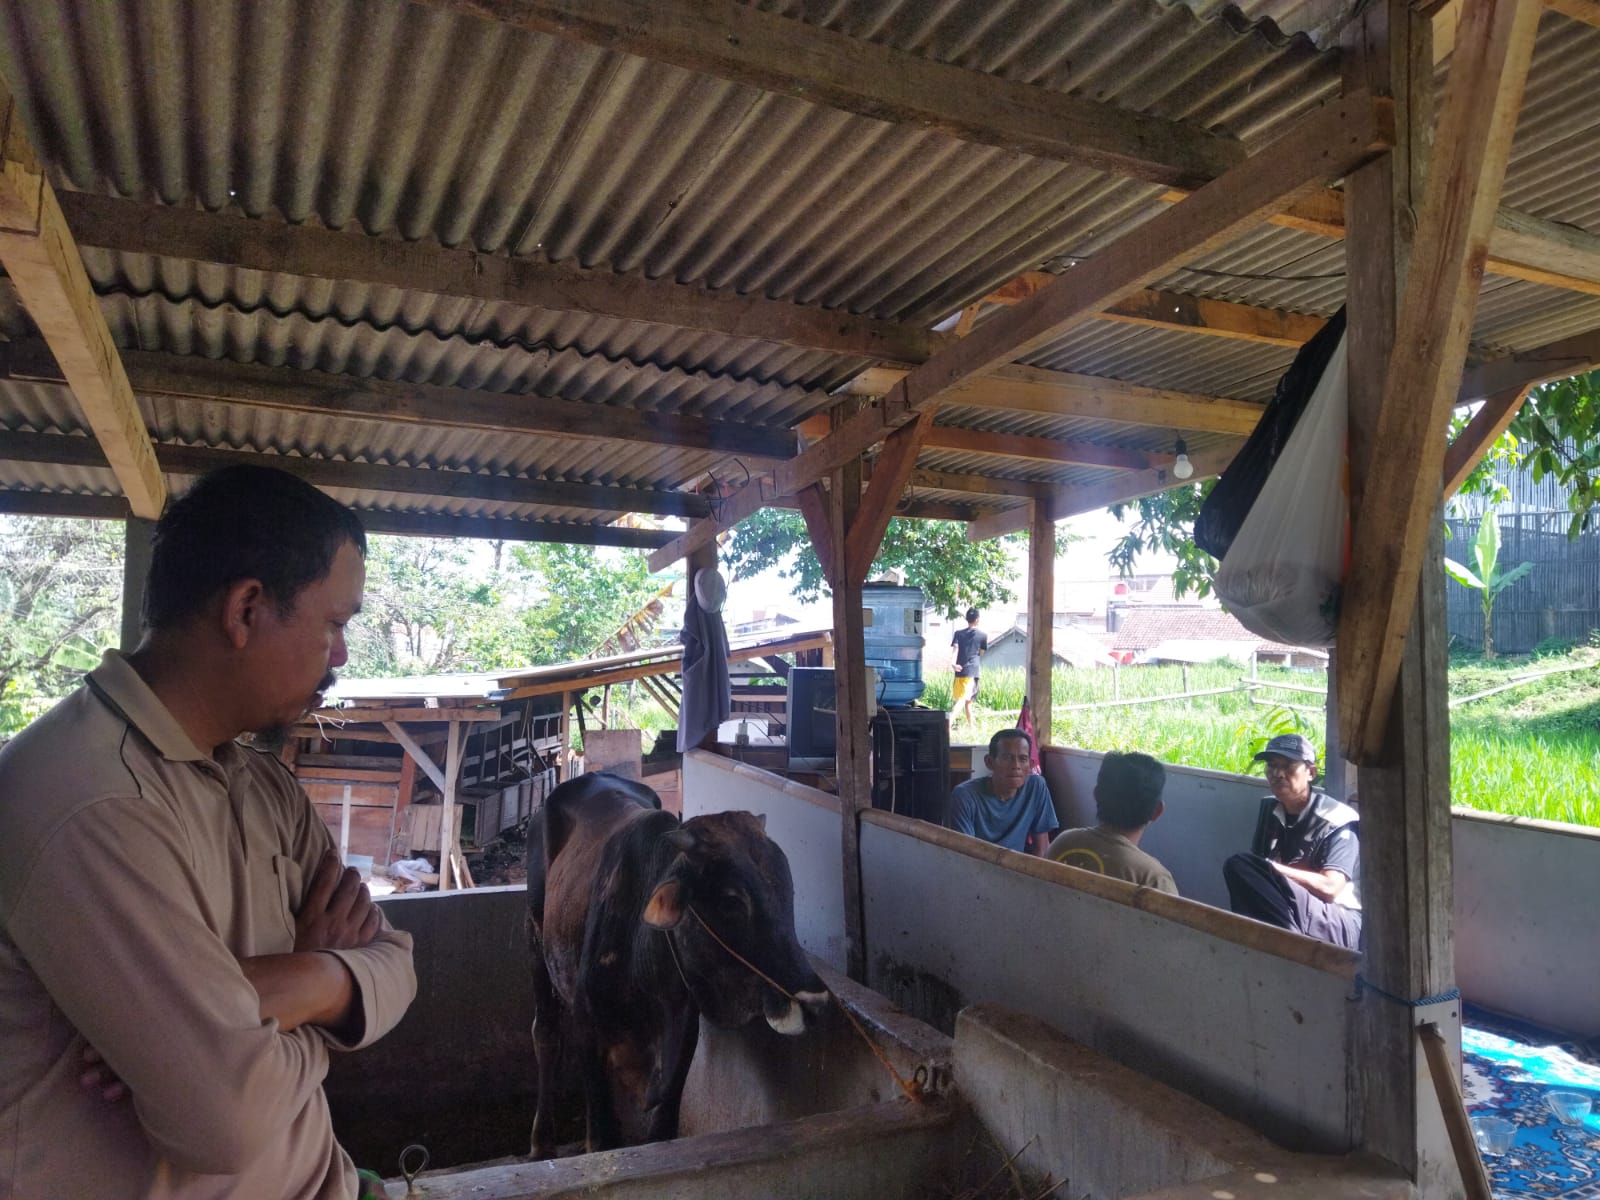 PETERNAK: Kondisi peternakan sapi di Cisurupan, Cibiru, Kota Bandung, Kamis (23/6). (Nizar/Jabar Ekspres)